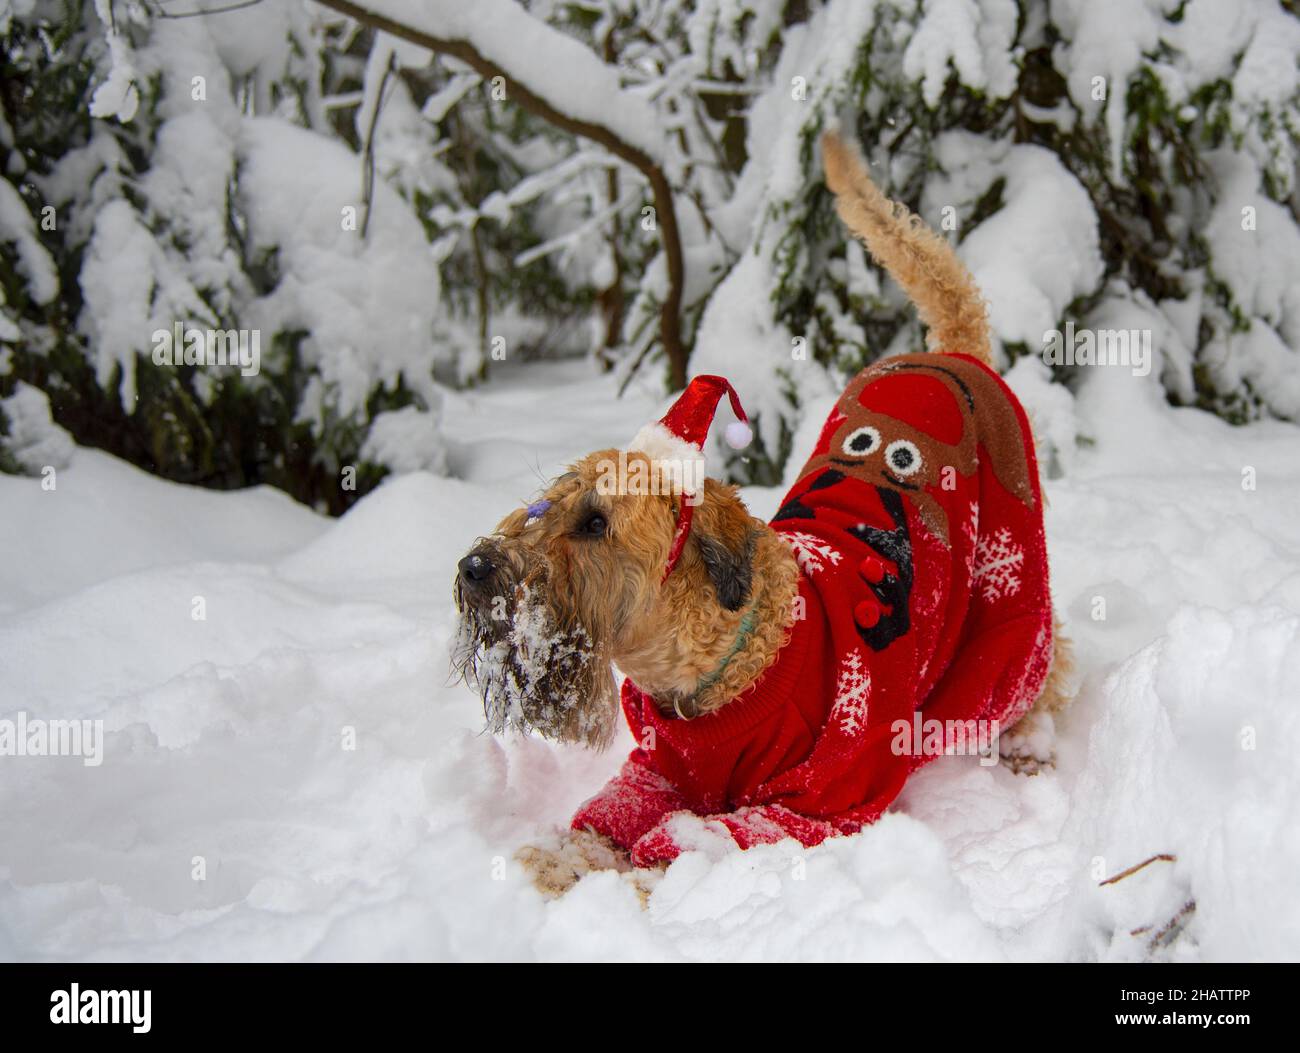 Terrier irlandais à revêtement doux.Un chien rouge moelleux en costume rouge du nouvel an pose dans une forêt enneigée. Banque D'Images